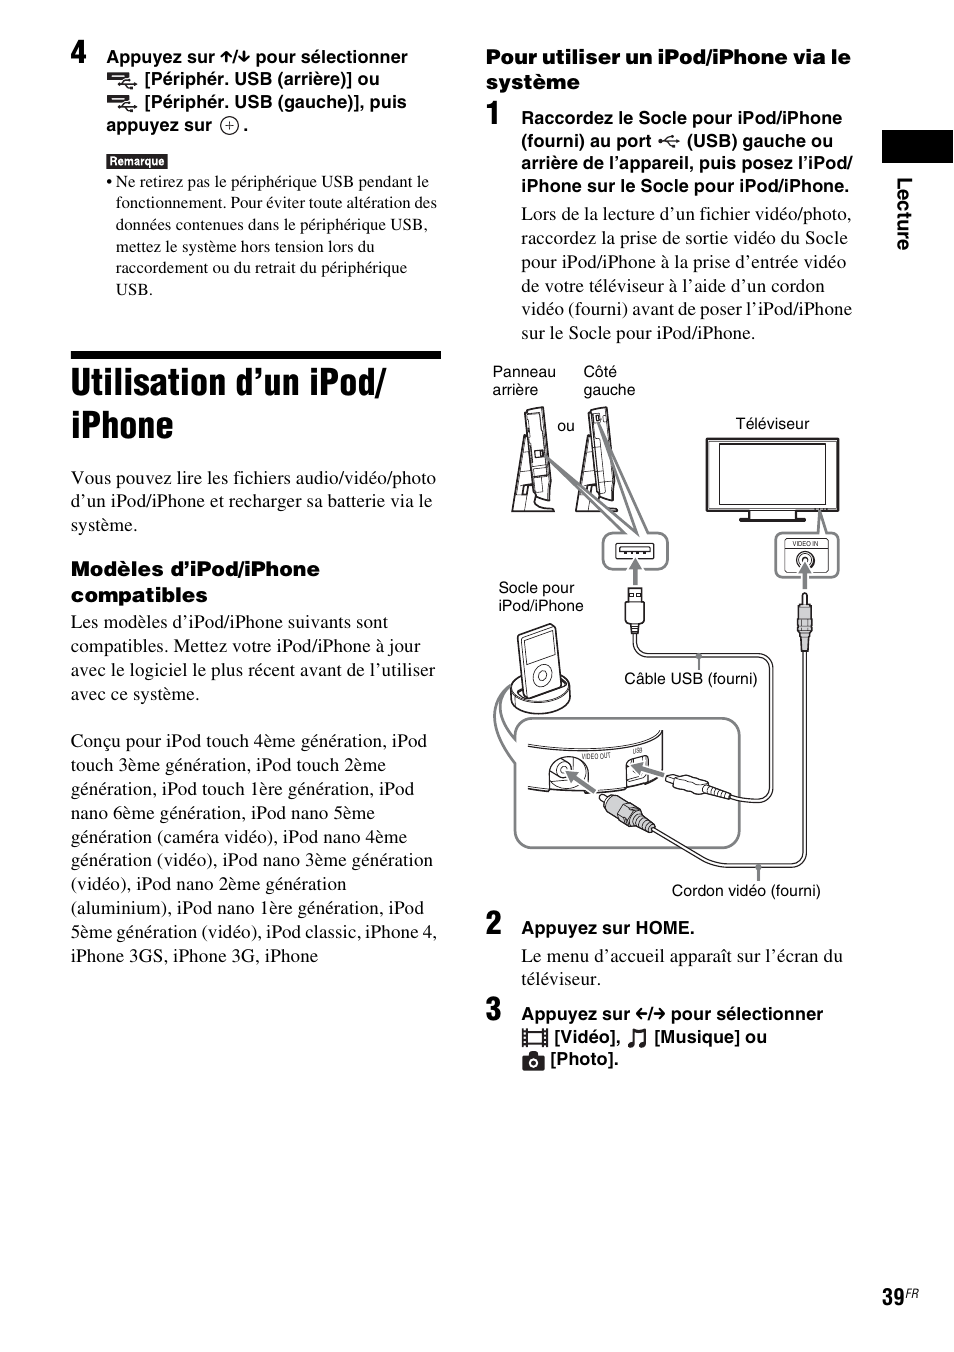 Utilisation d’un ipod/iphone, Utilisation d’un ipod/ iphone | Sony BDV-L600 Manuel d'utilisation | Page 39 / 88